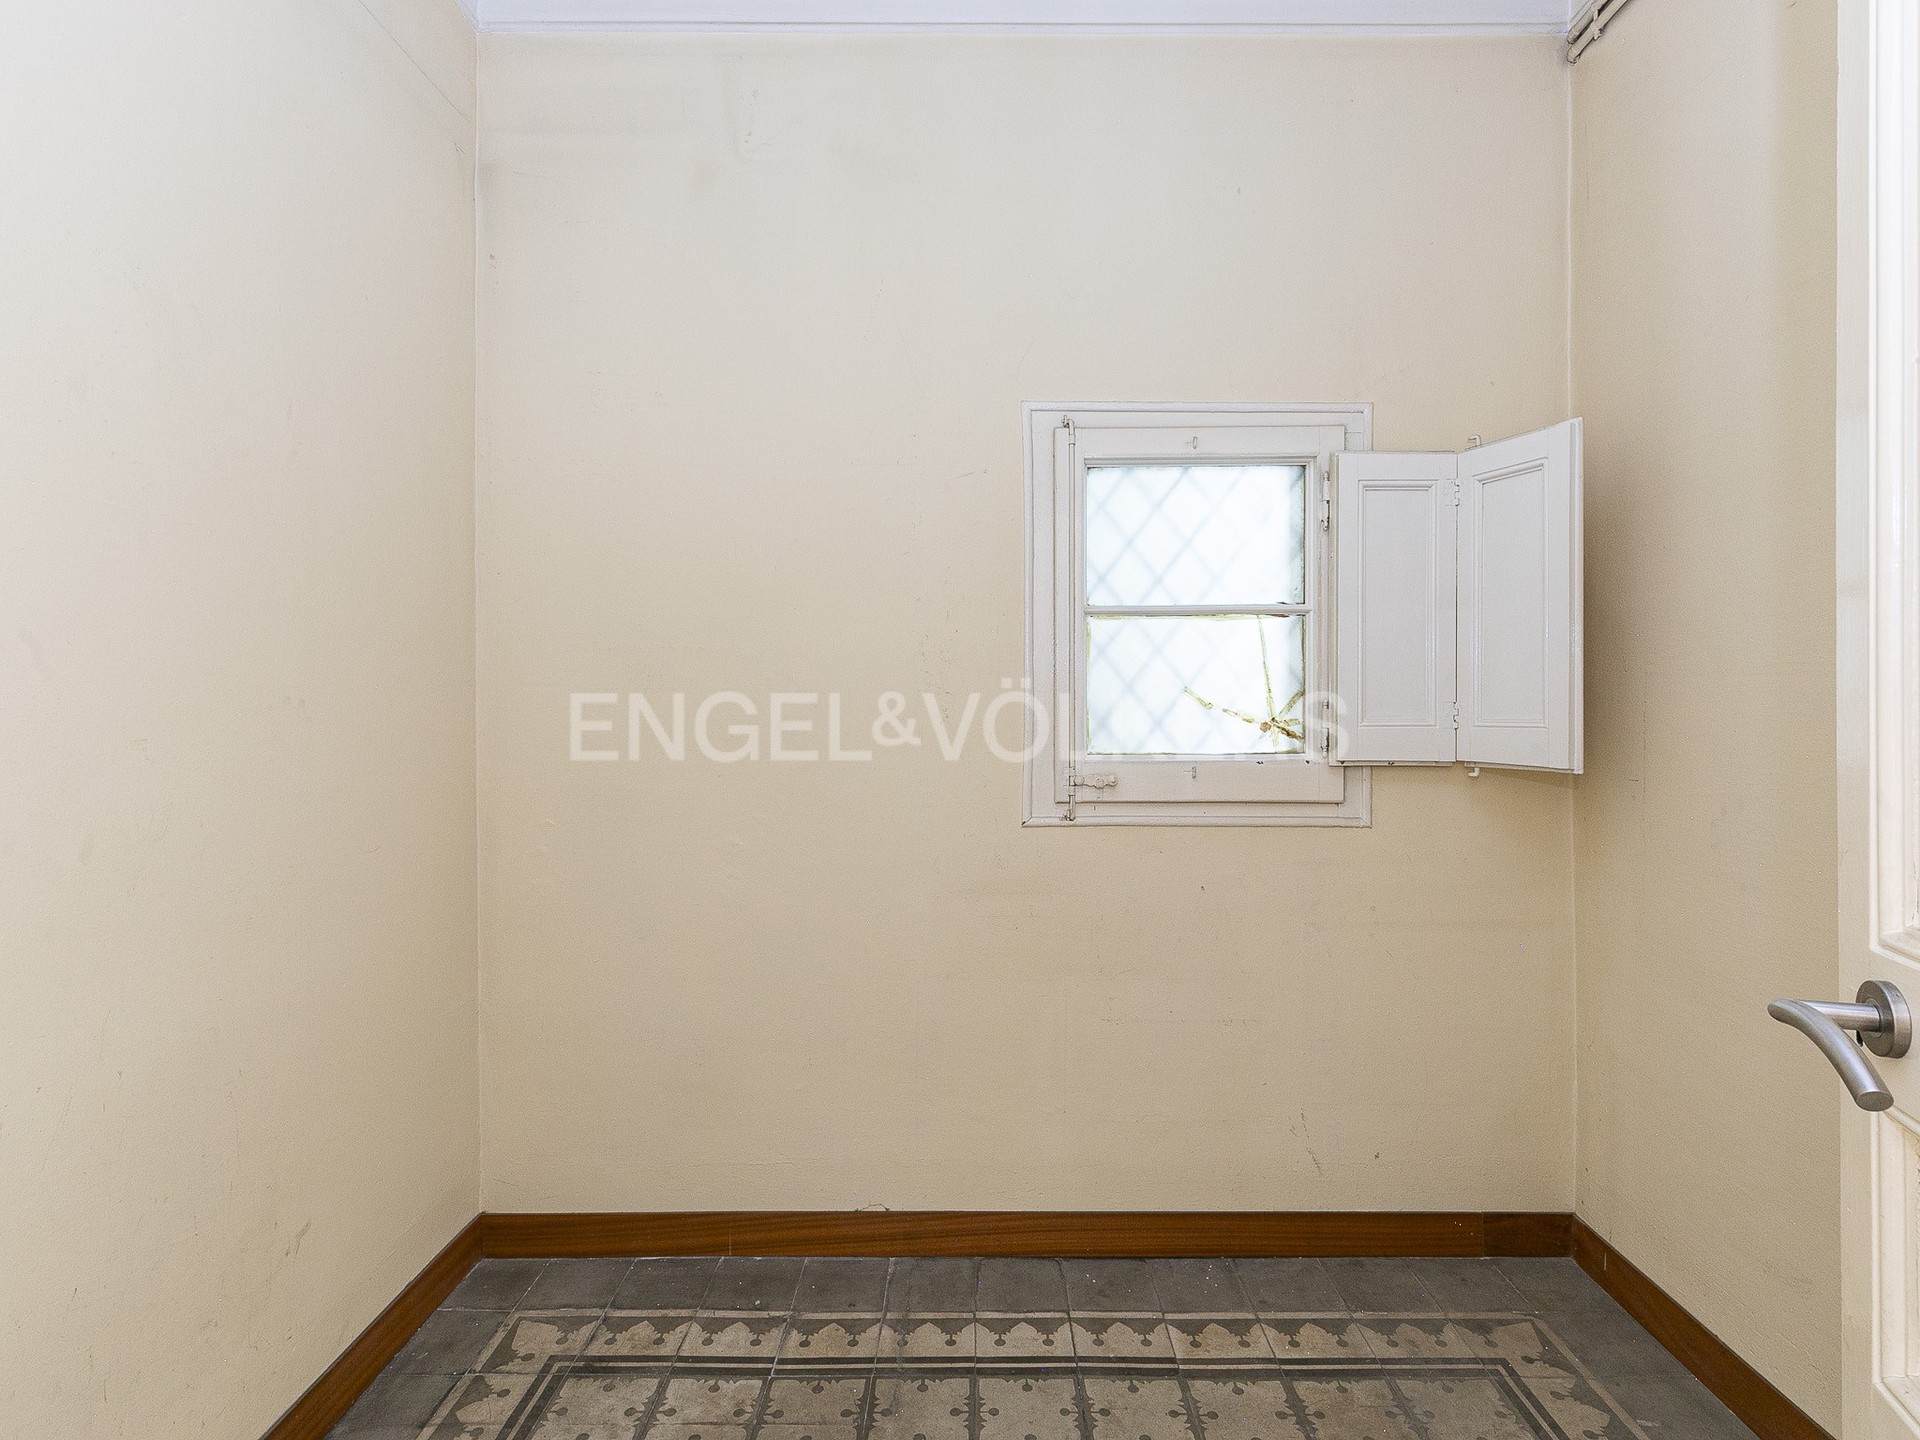 Espacioso piso en finca Regia en Eixample con elementos originales